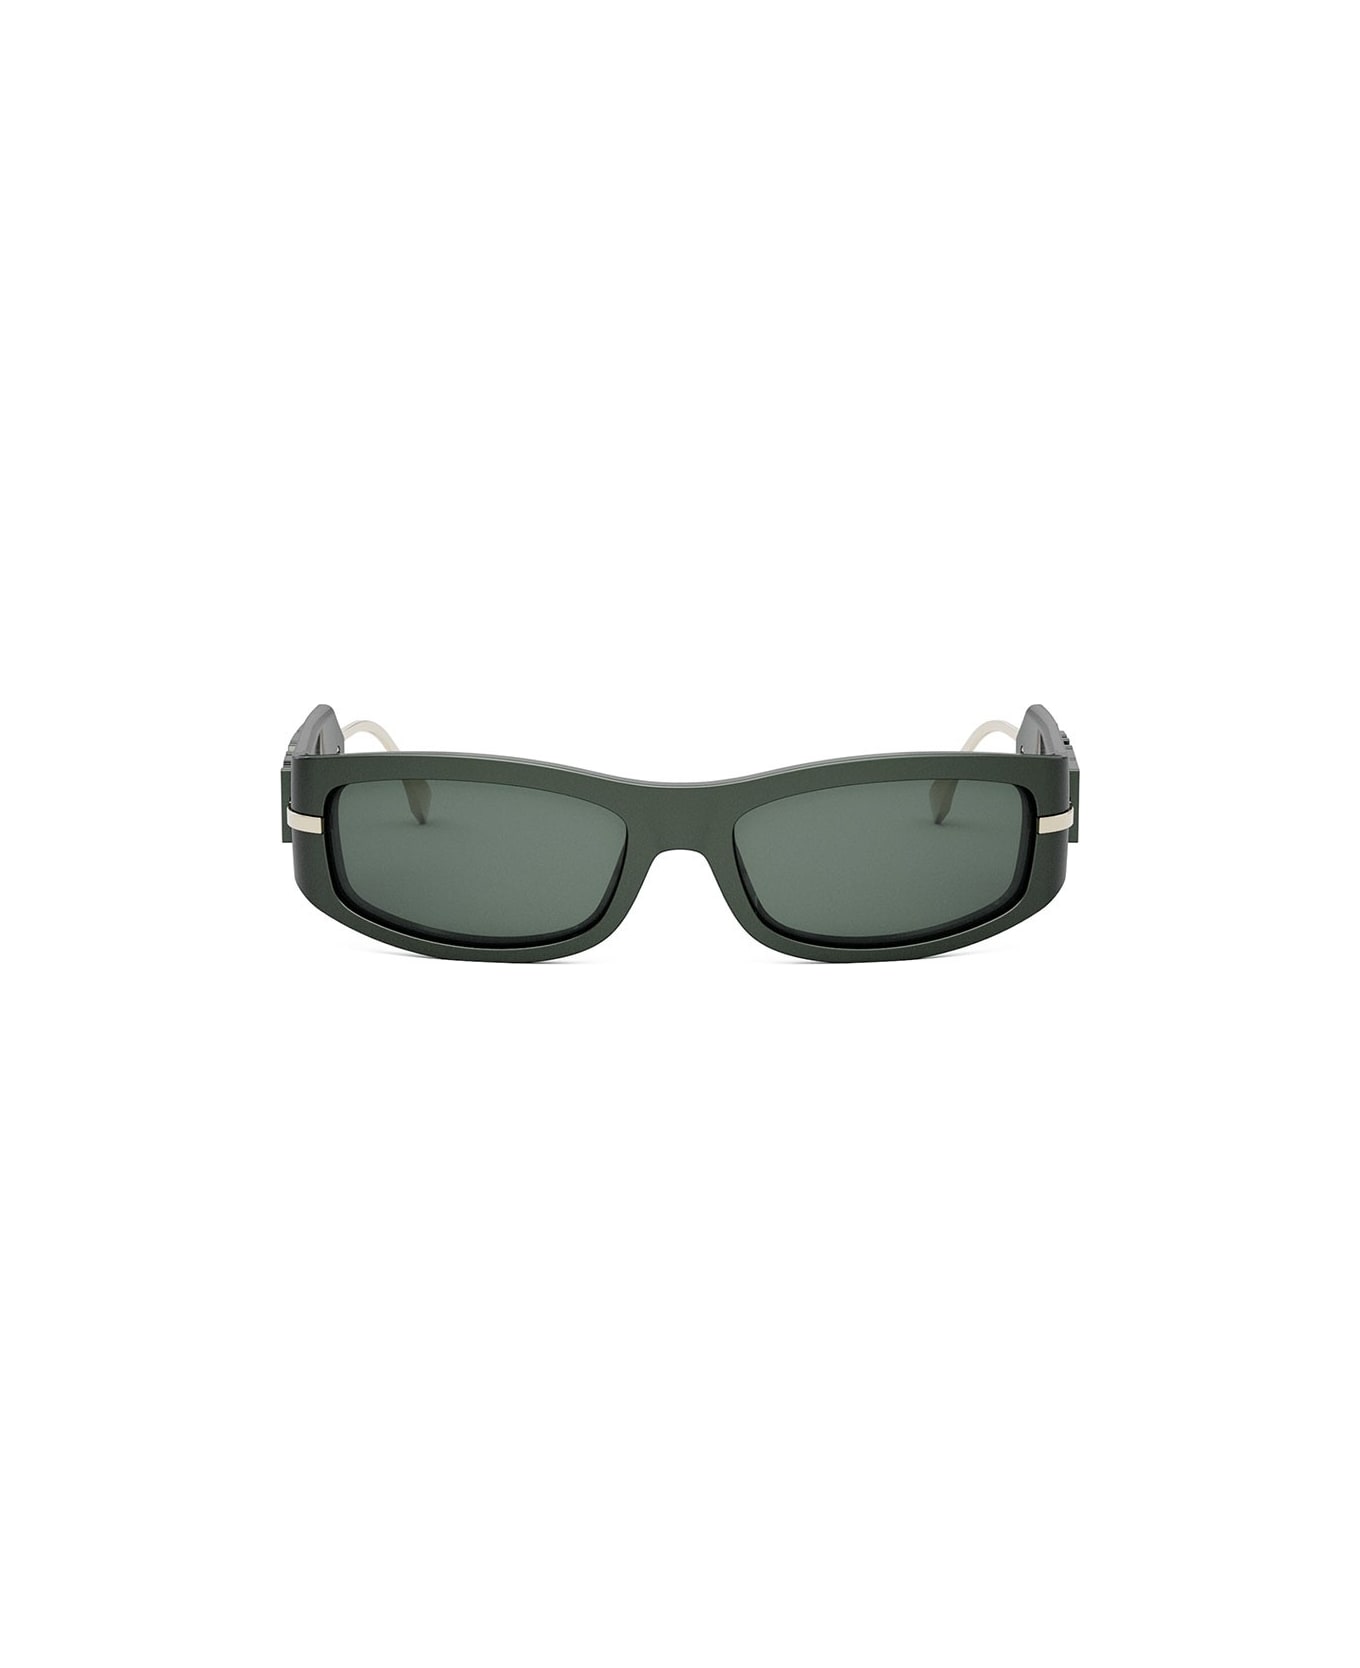 Fendi Eyewear Sunglasses - Verde/Verde